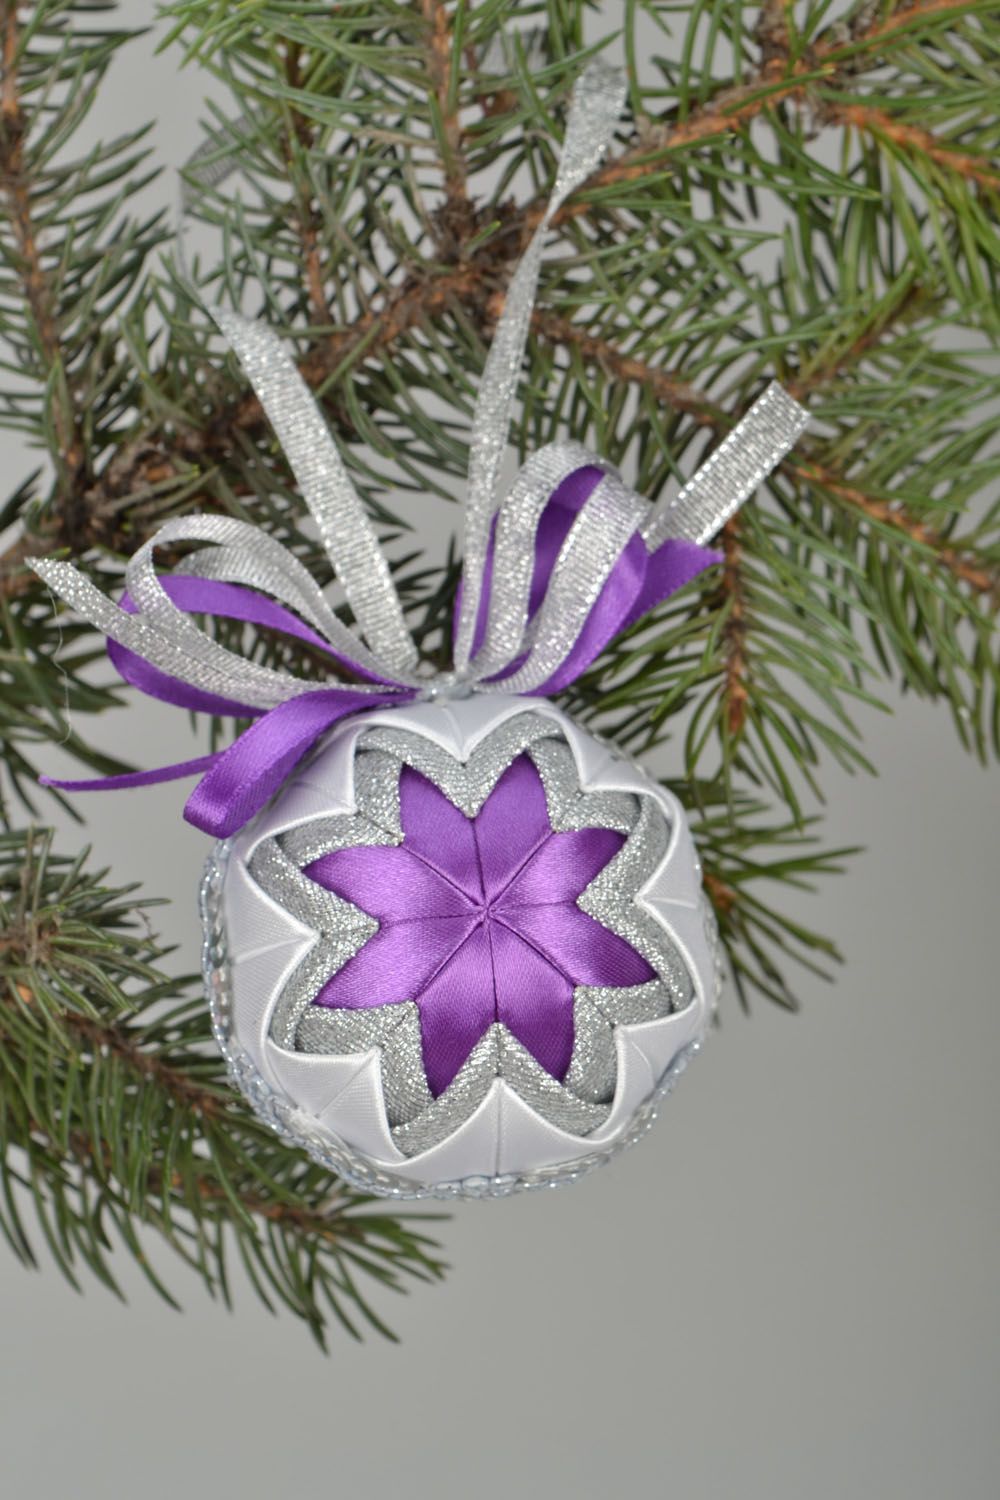 Décoration pour arbre de Noël faite main en polystyrène et rubans blanc mauve photo 1